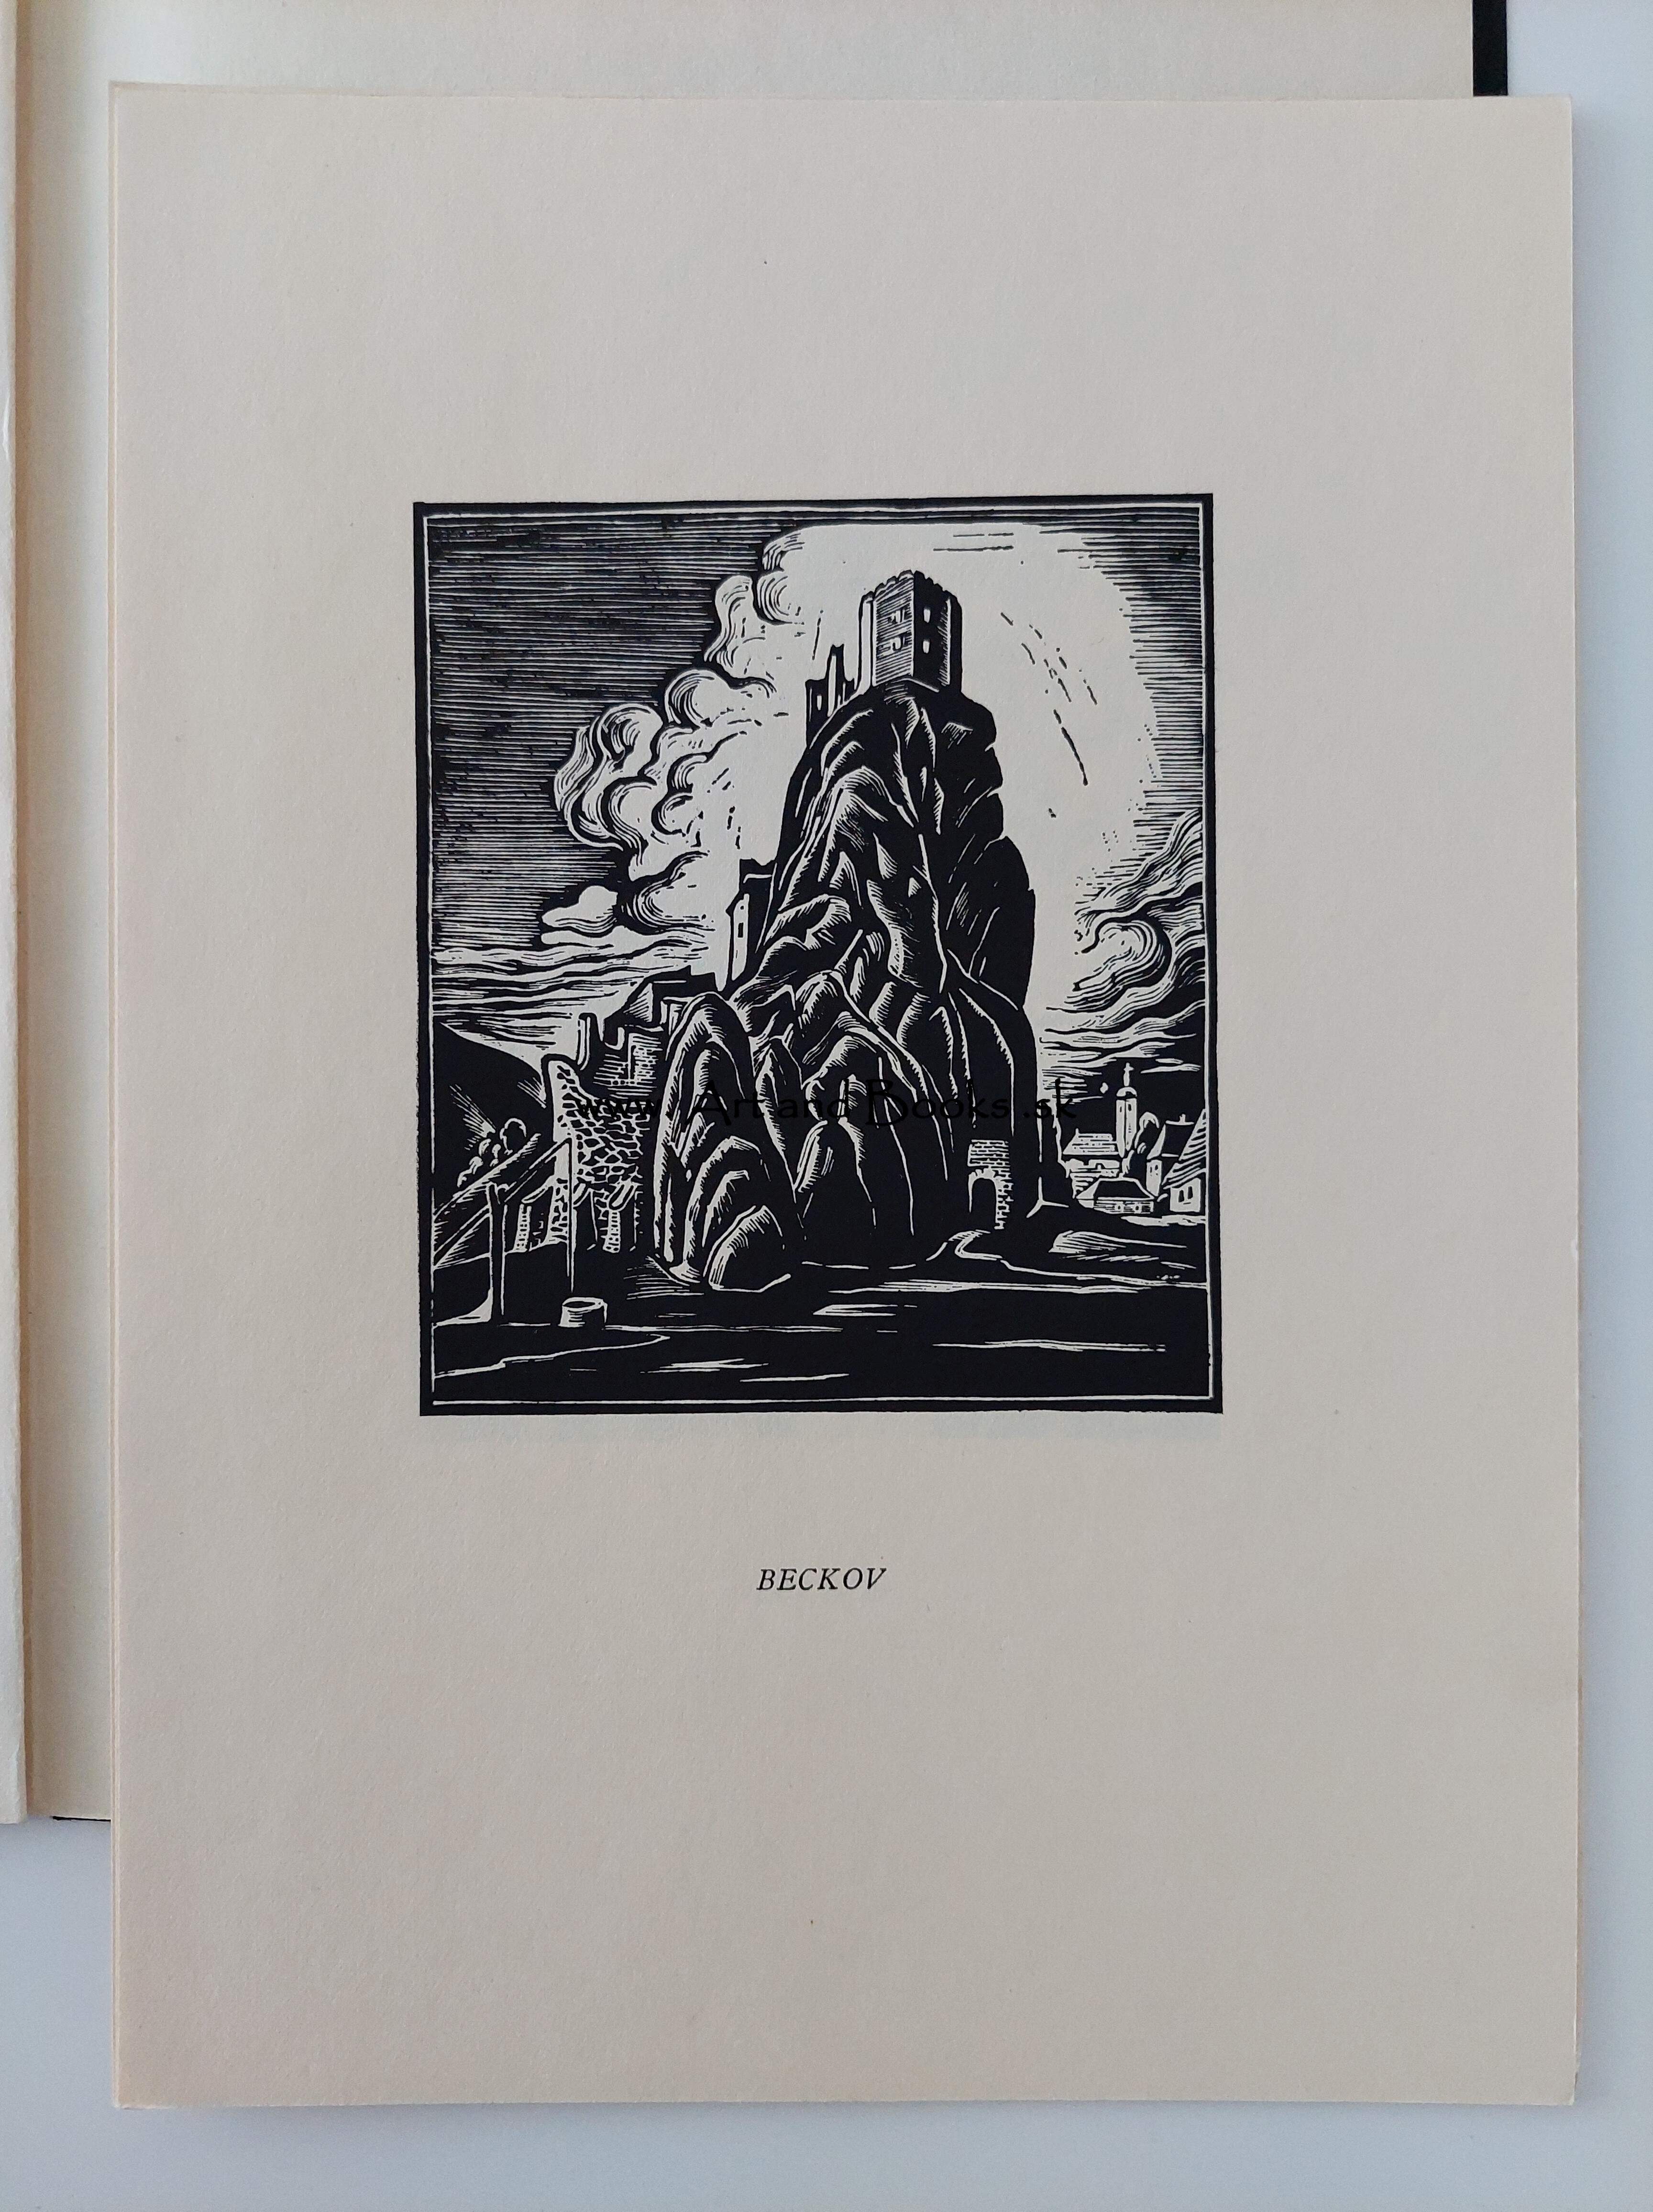 F. Duša a V. Ritter - Dolu Váhom (1933) (sold/predané) ● 175432